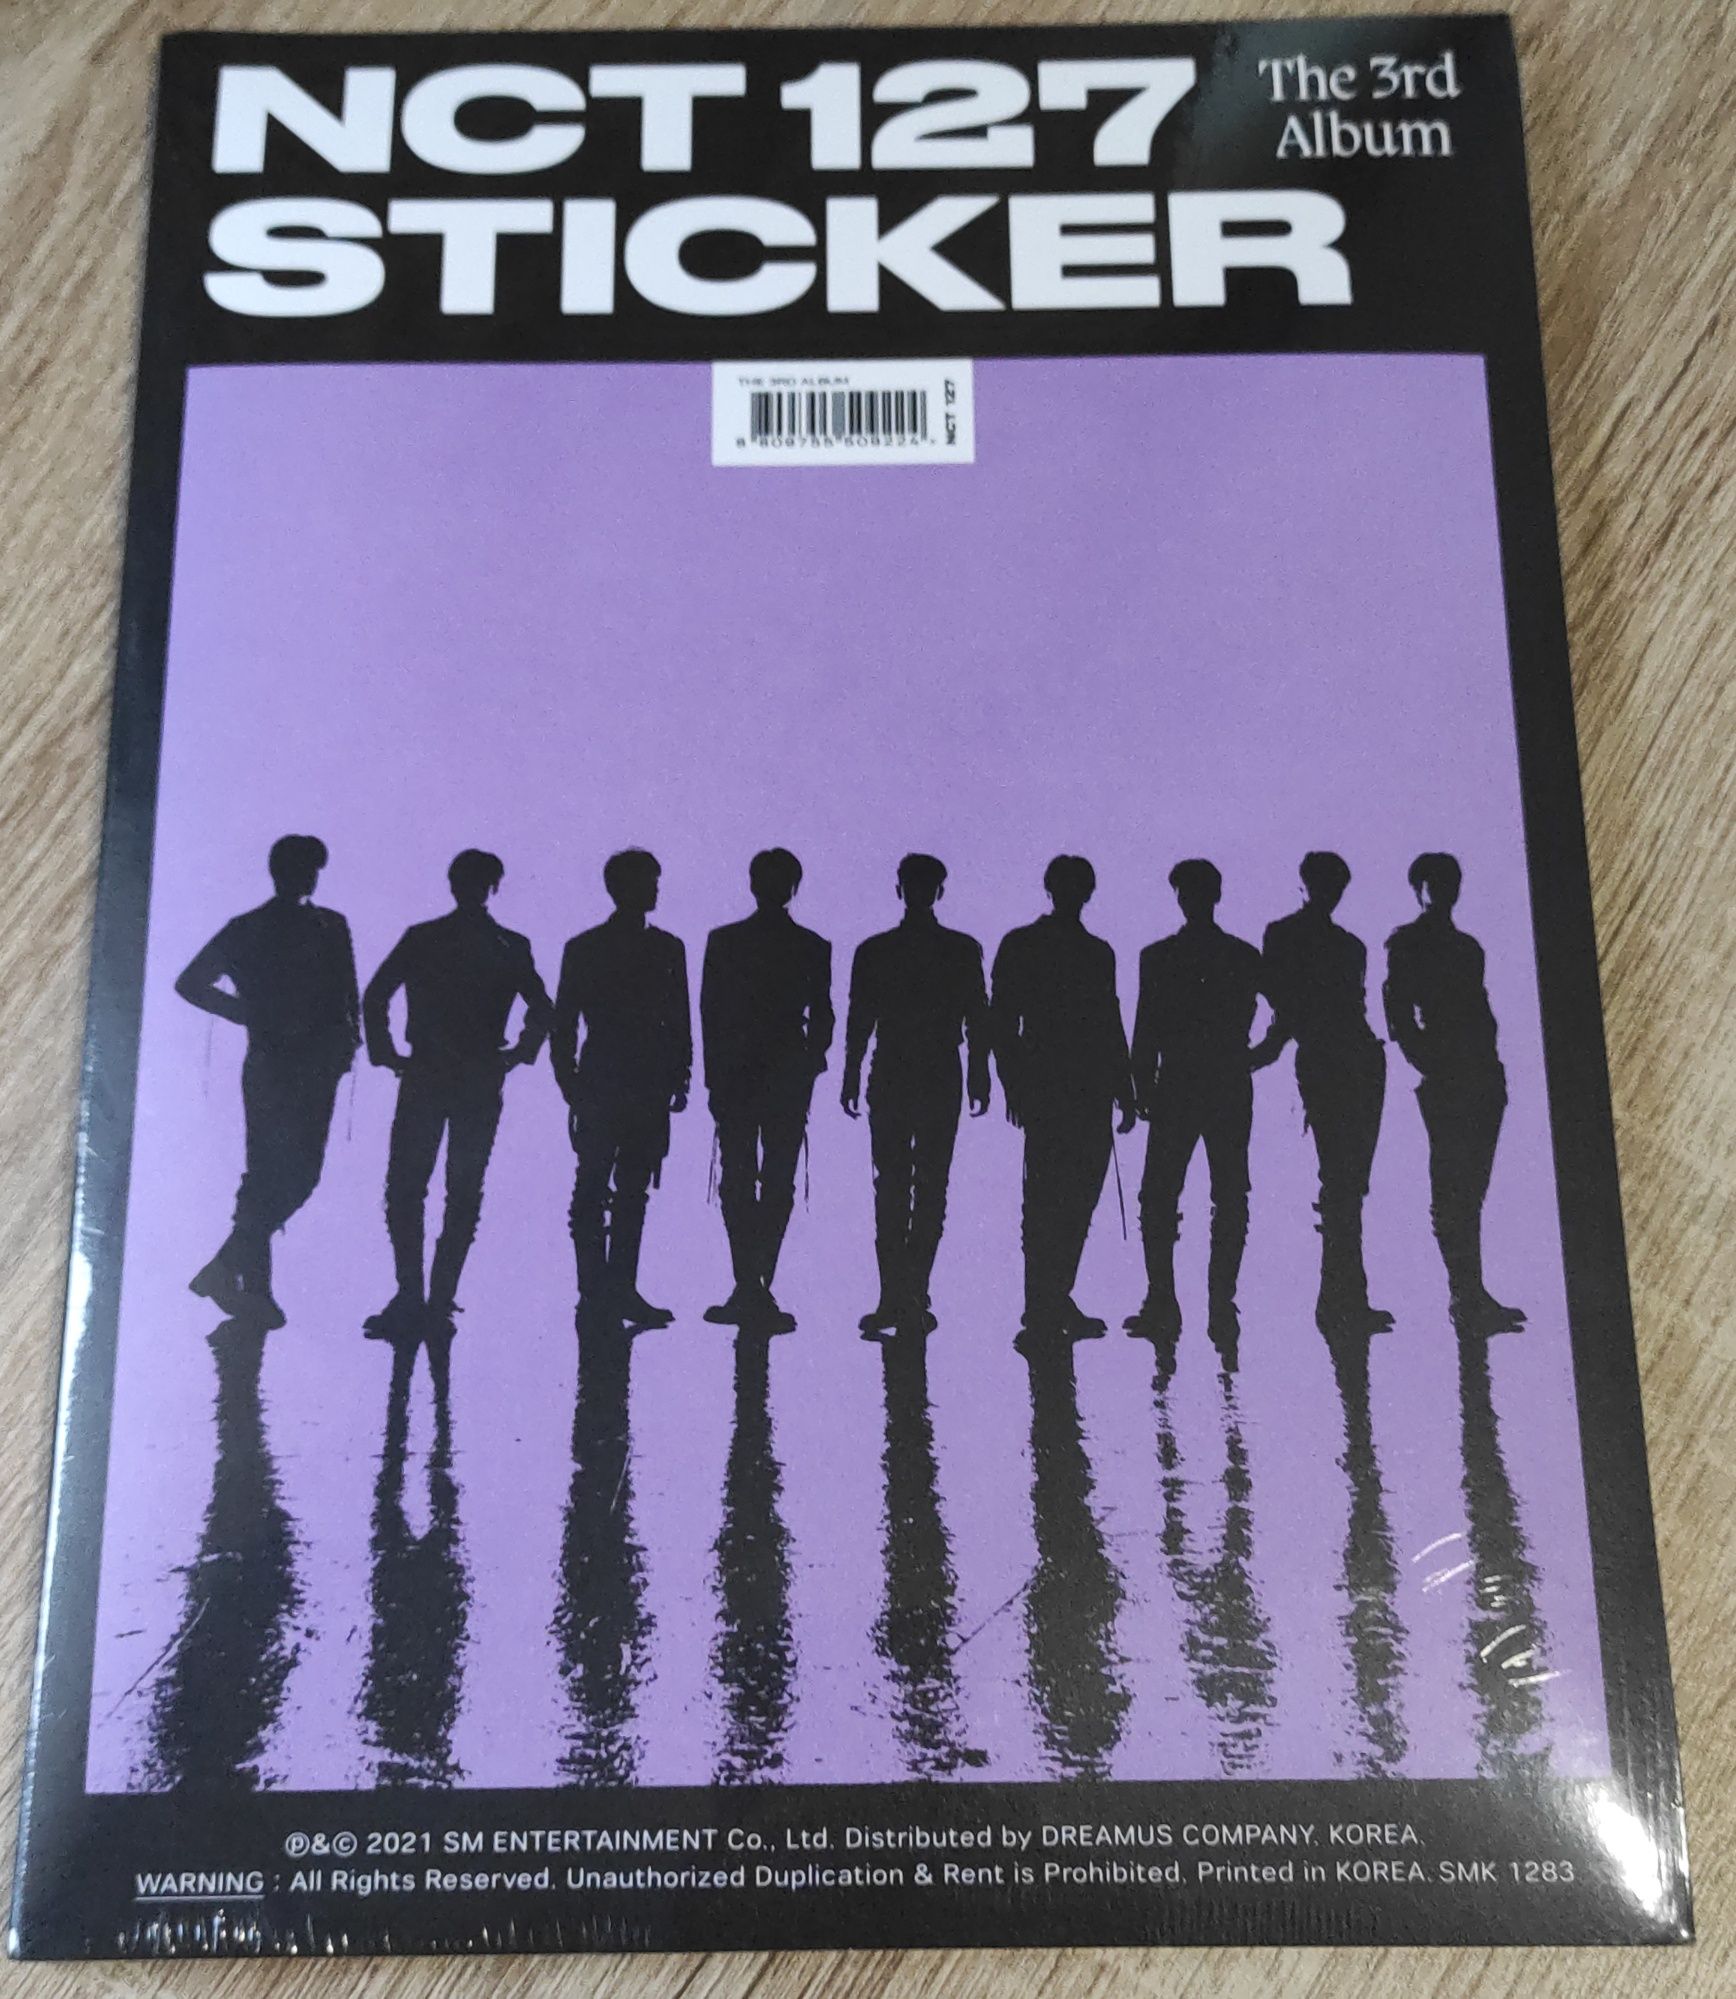 NCT 127 - Sticker CD (formato revista)